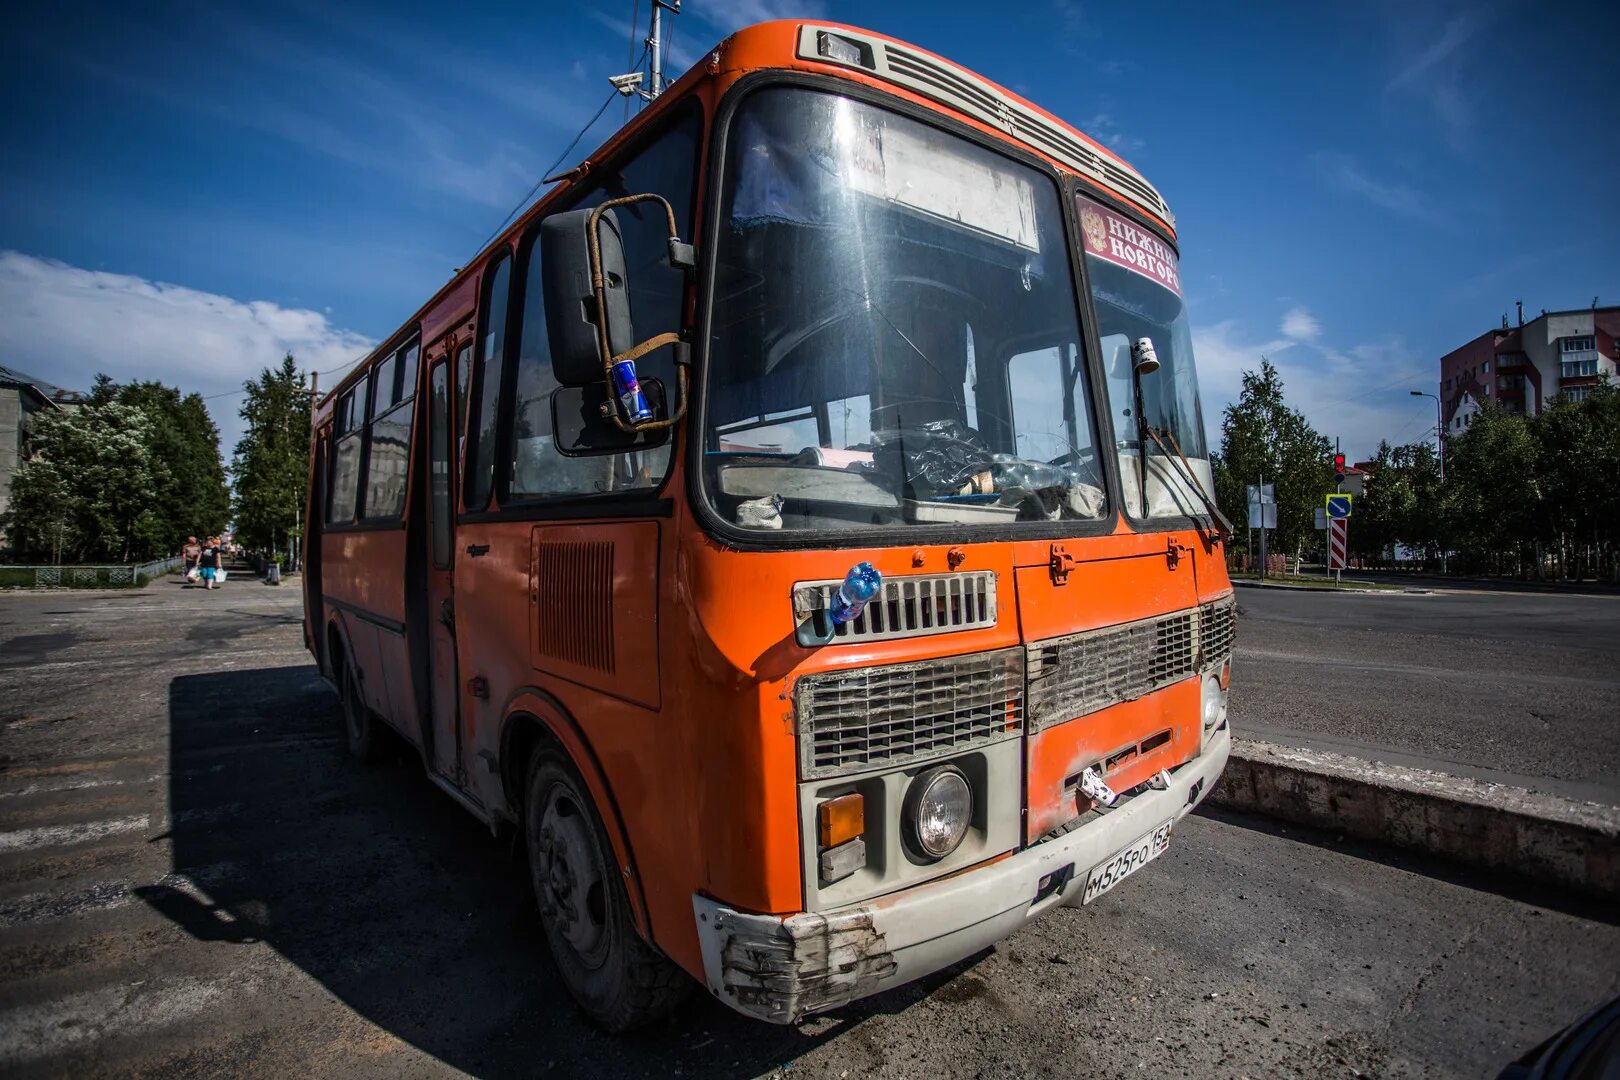 Оранжевый автобус пермь экскурсии. ПАЗ оранжевый автобус. Автобус пазик оранжевый. Апельсиновый пазик. Желто оранжевый автобус пазик.